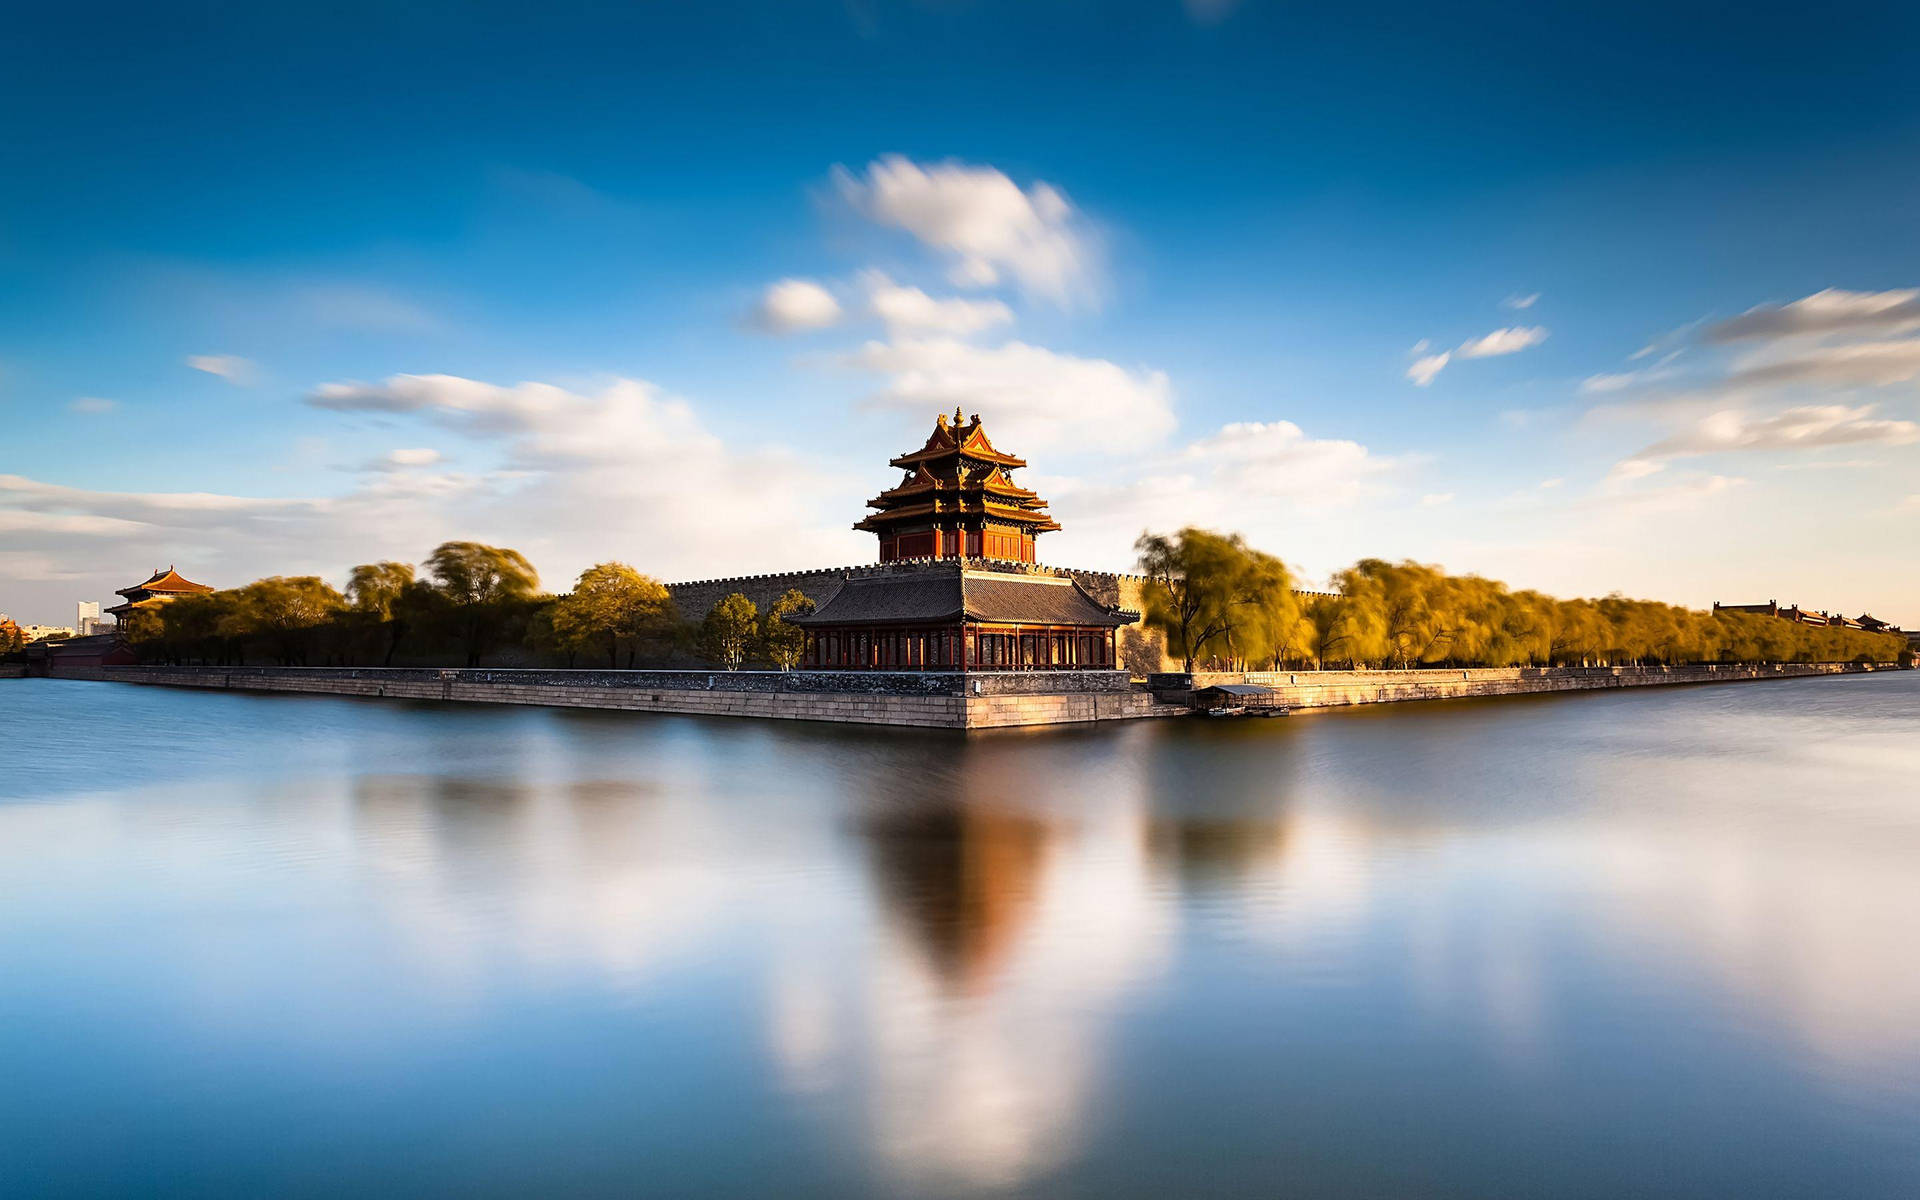 Forbidden City In Beijing Picture